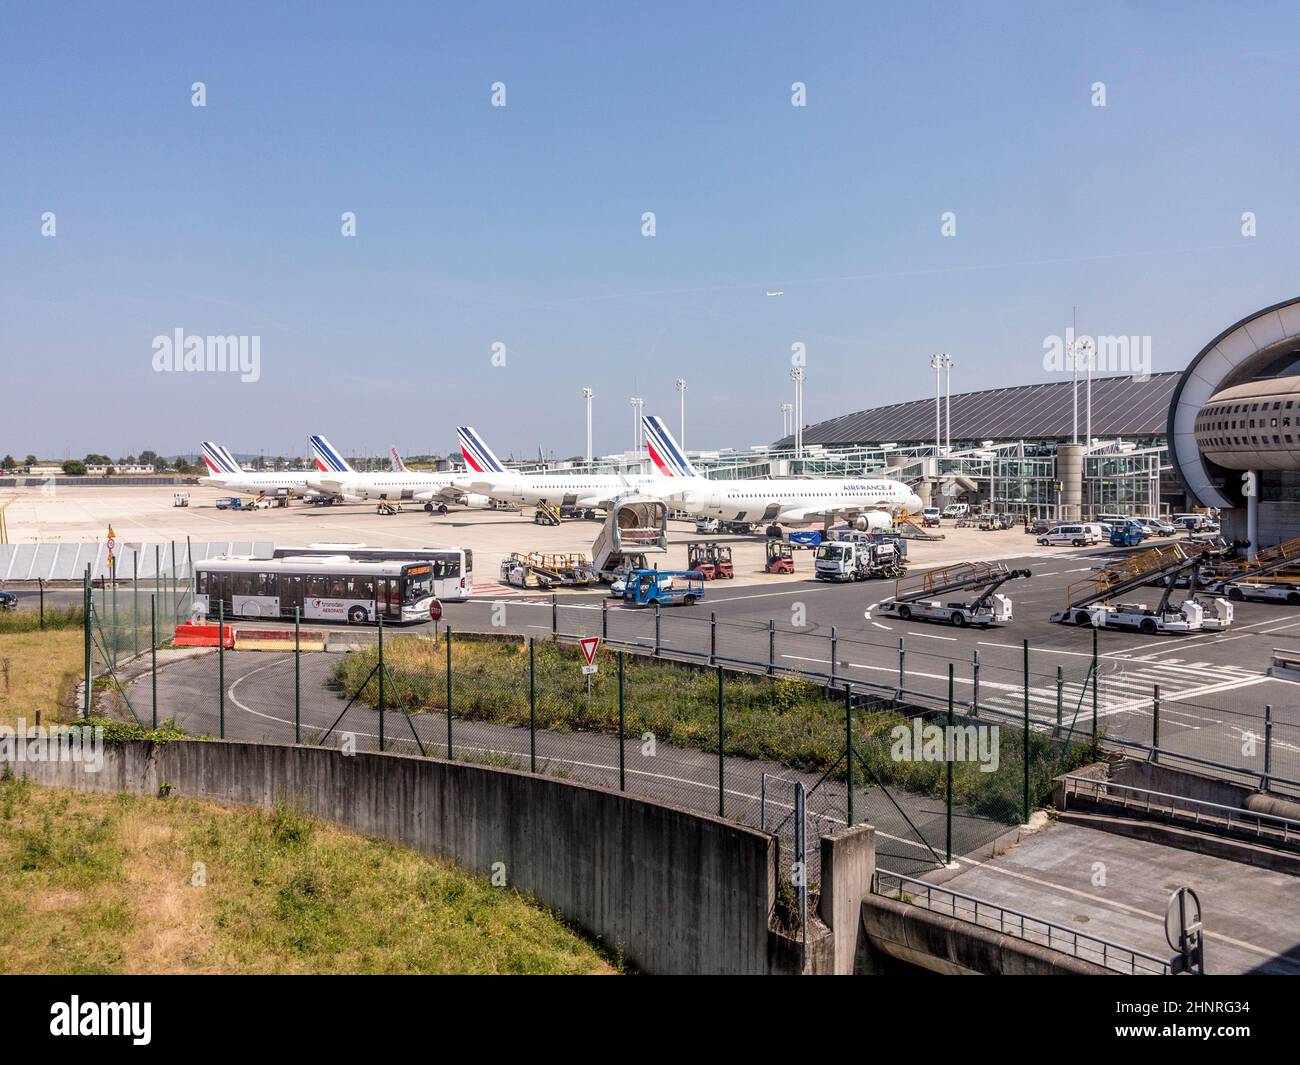 airfrance parchi aerei presso il nuovo terminal dell'aeroporto Charles de Gaulle di Parigi, Francia Foto Stock